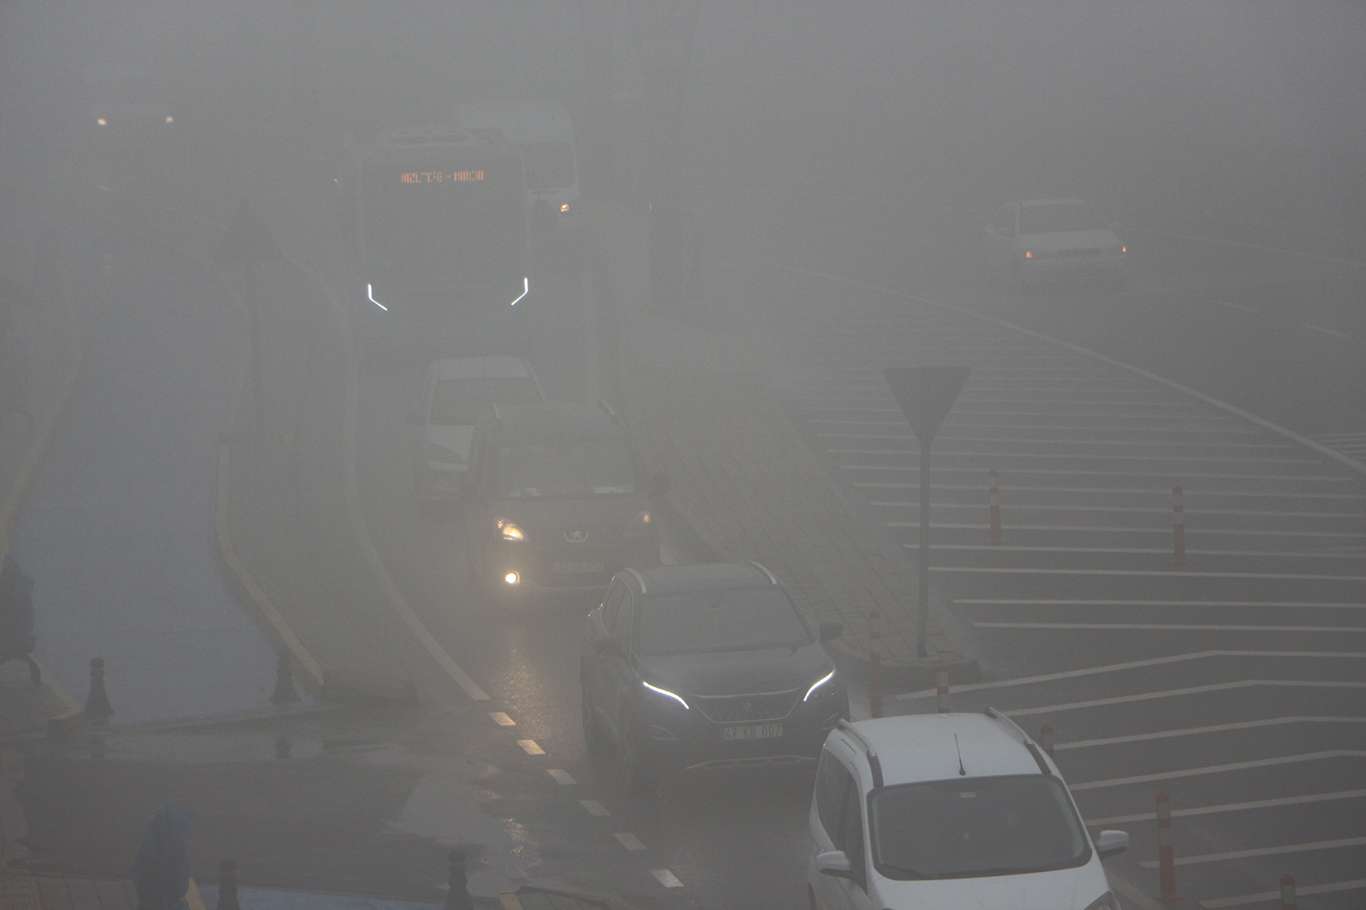 Mardin’de sis ulaşımı olumsuz etkiledi